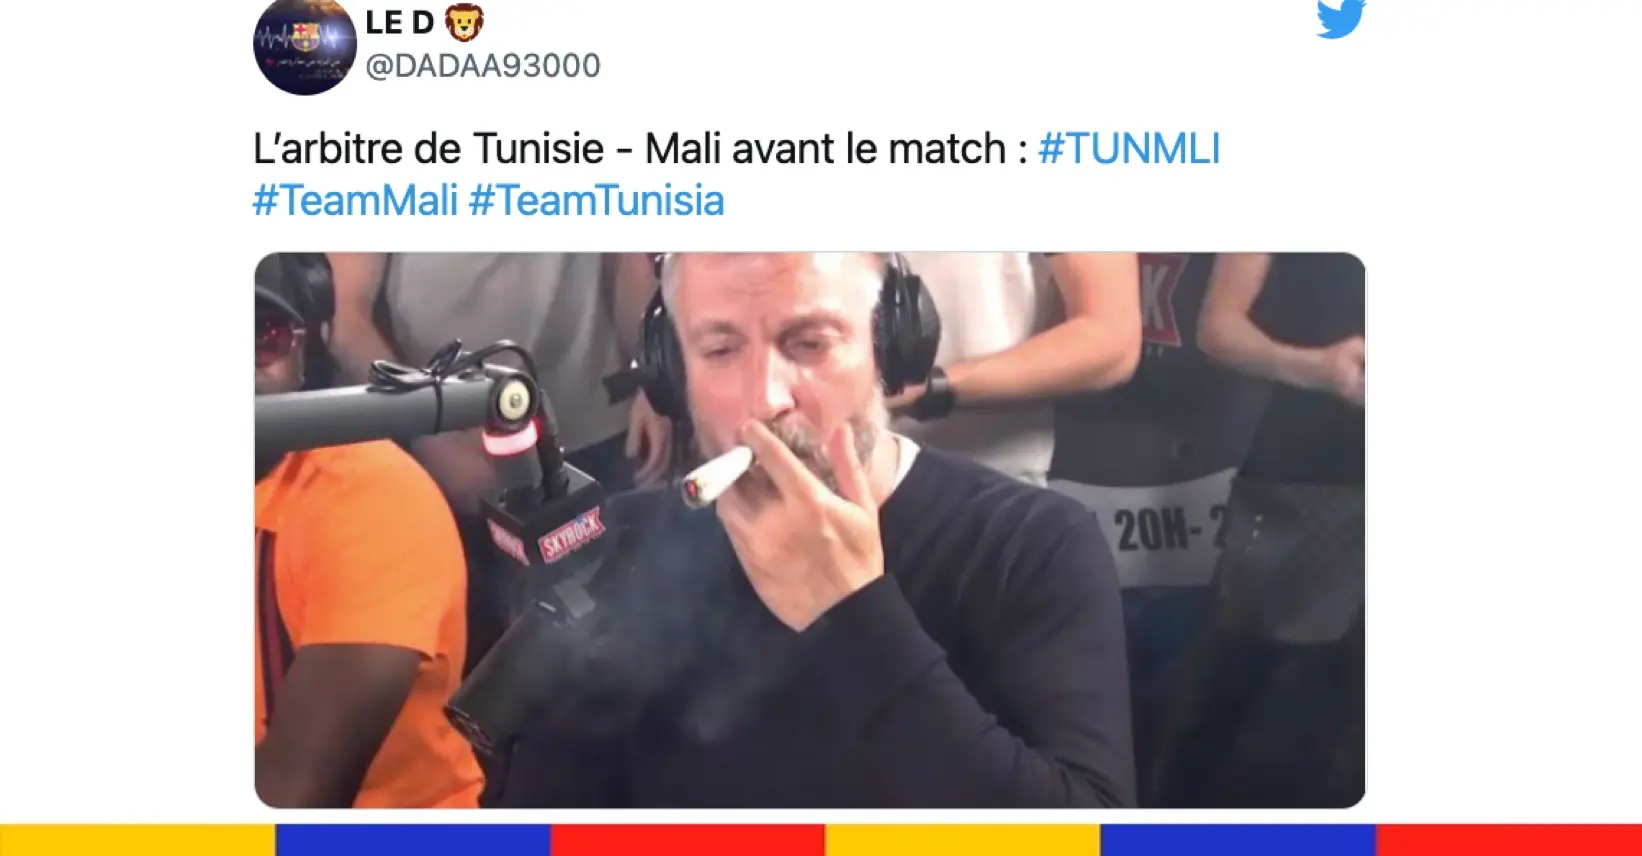 Le grand n’importe quoi des réseaux sociaux : arbitre de Tunisie-Mali